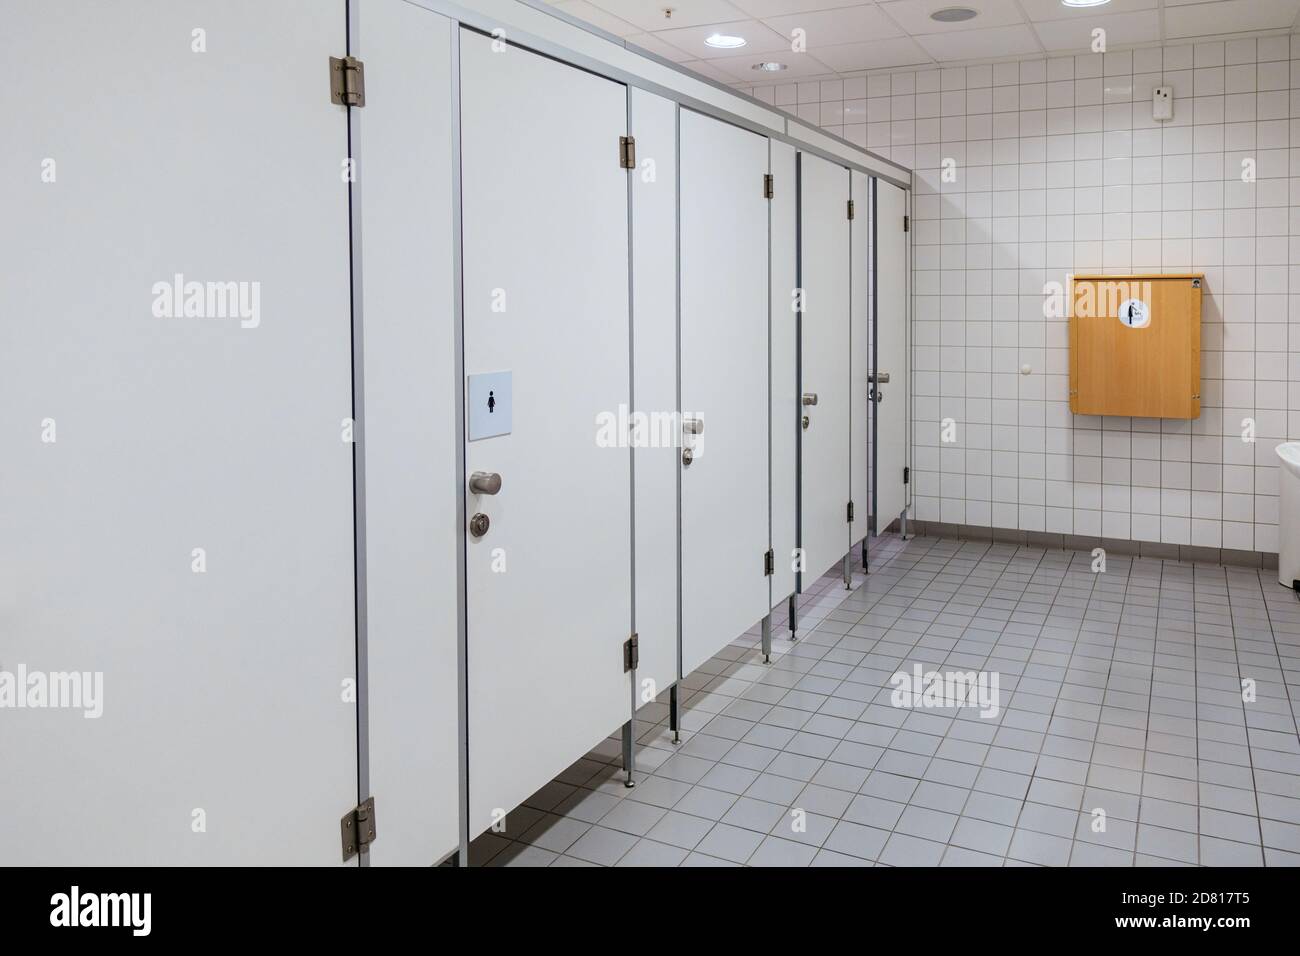 Öffentliche Toilette, Toilette, WC Türen, Wickeltisch Stockfotografie -  Alamy